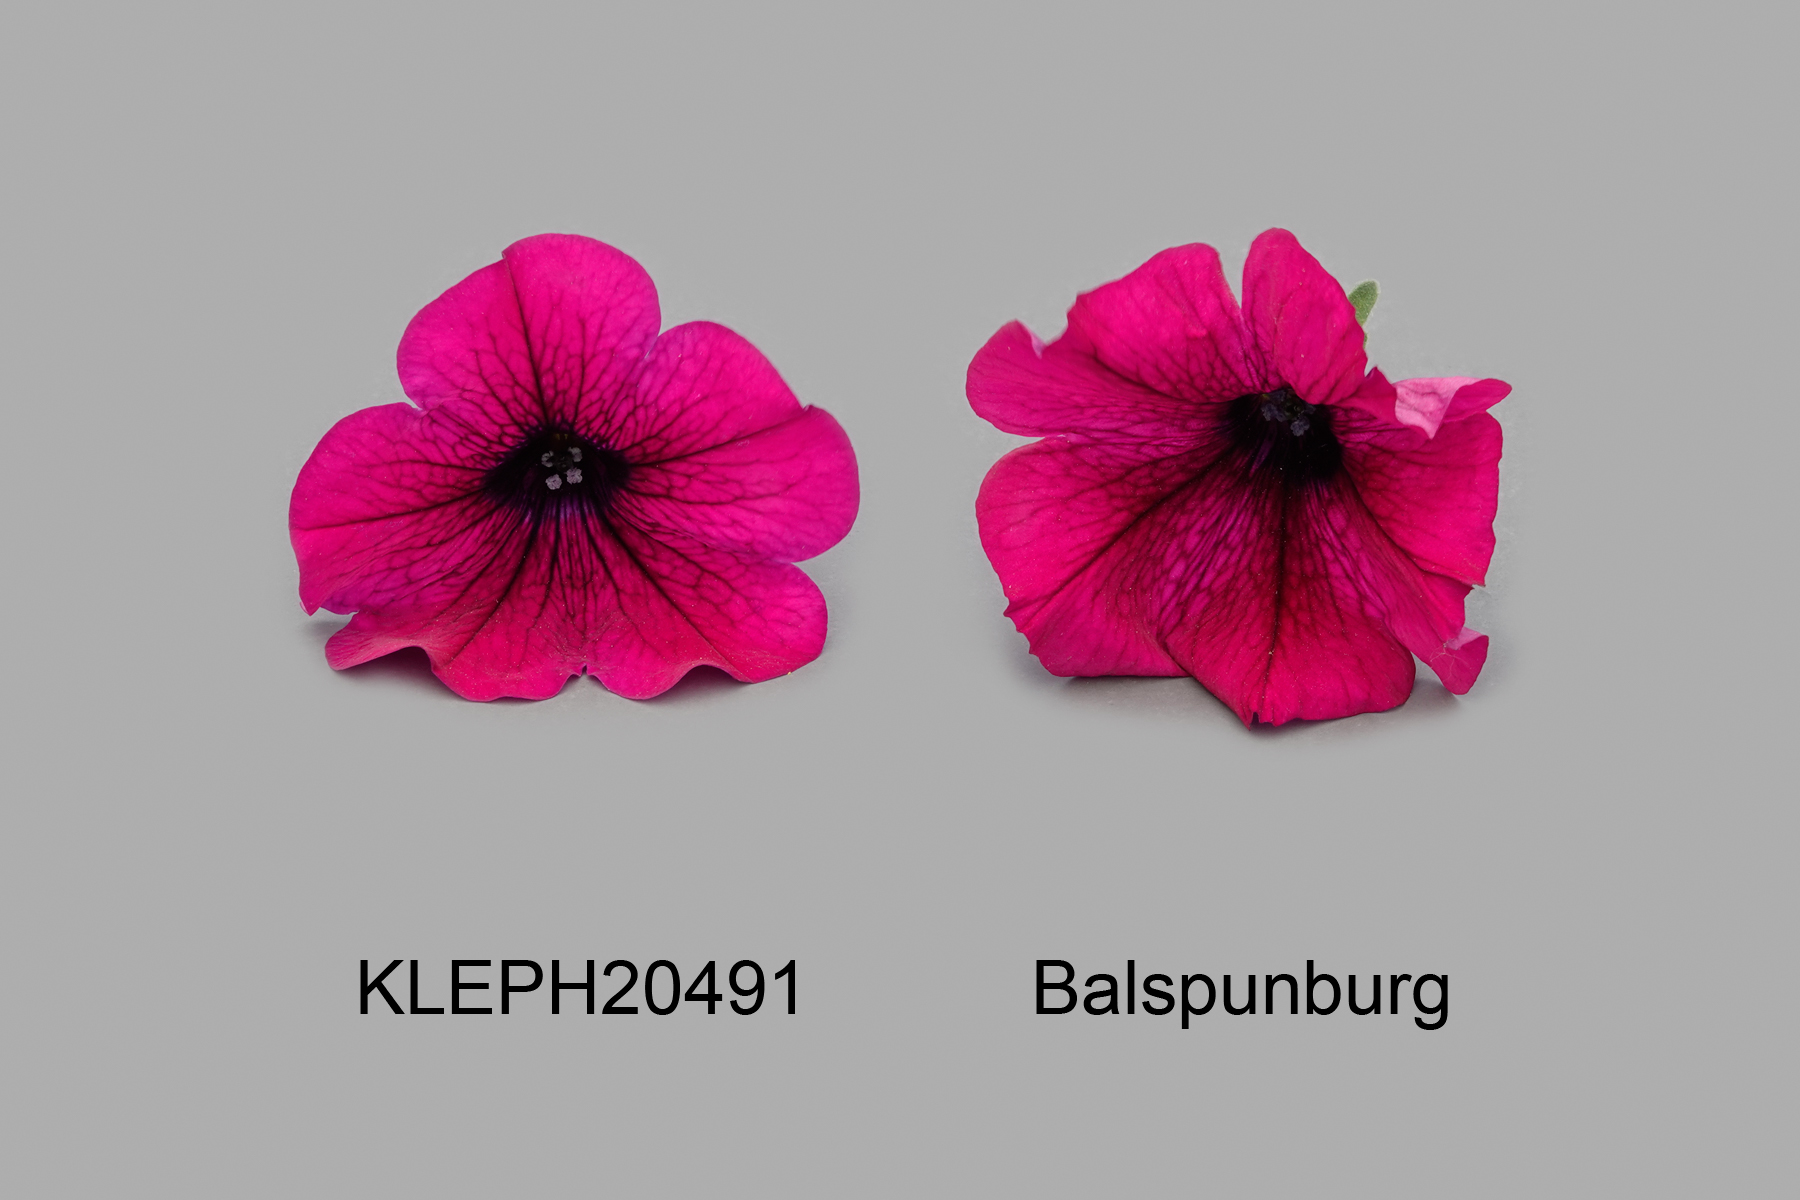 KLEPH20491